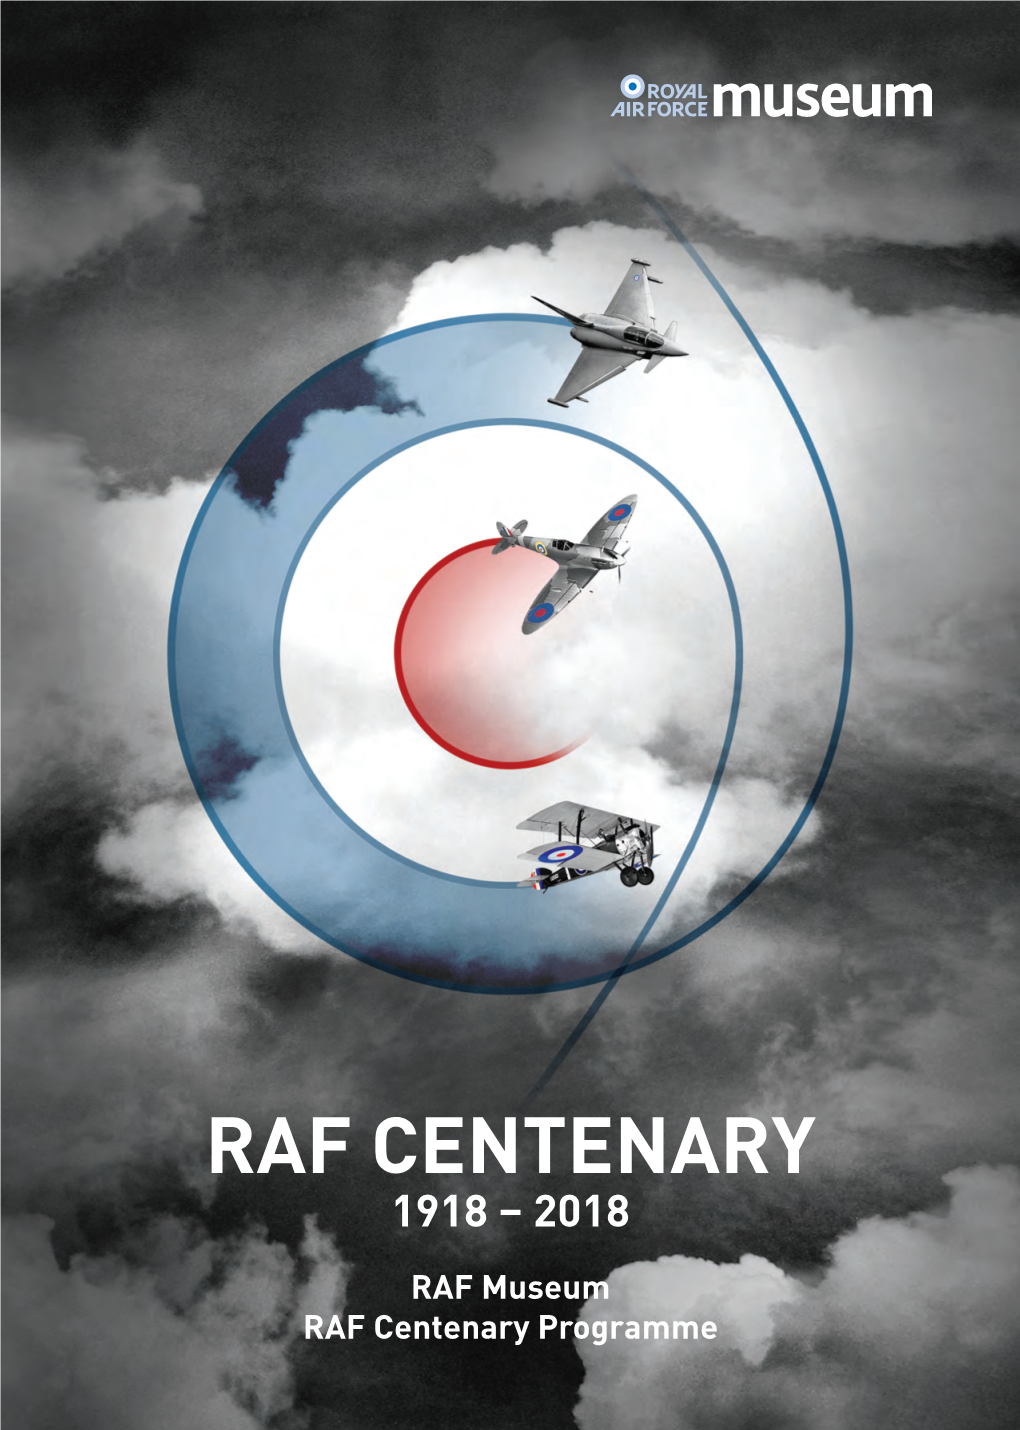 Raf Centenary 1918 – 2018